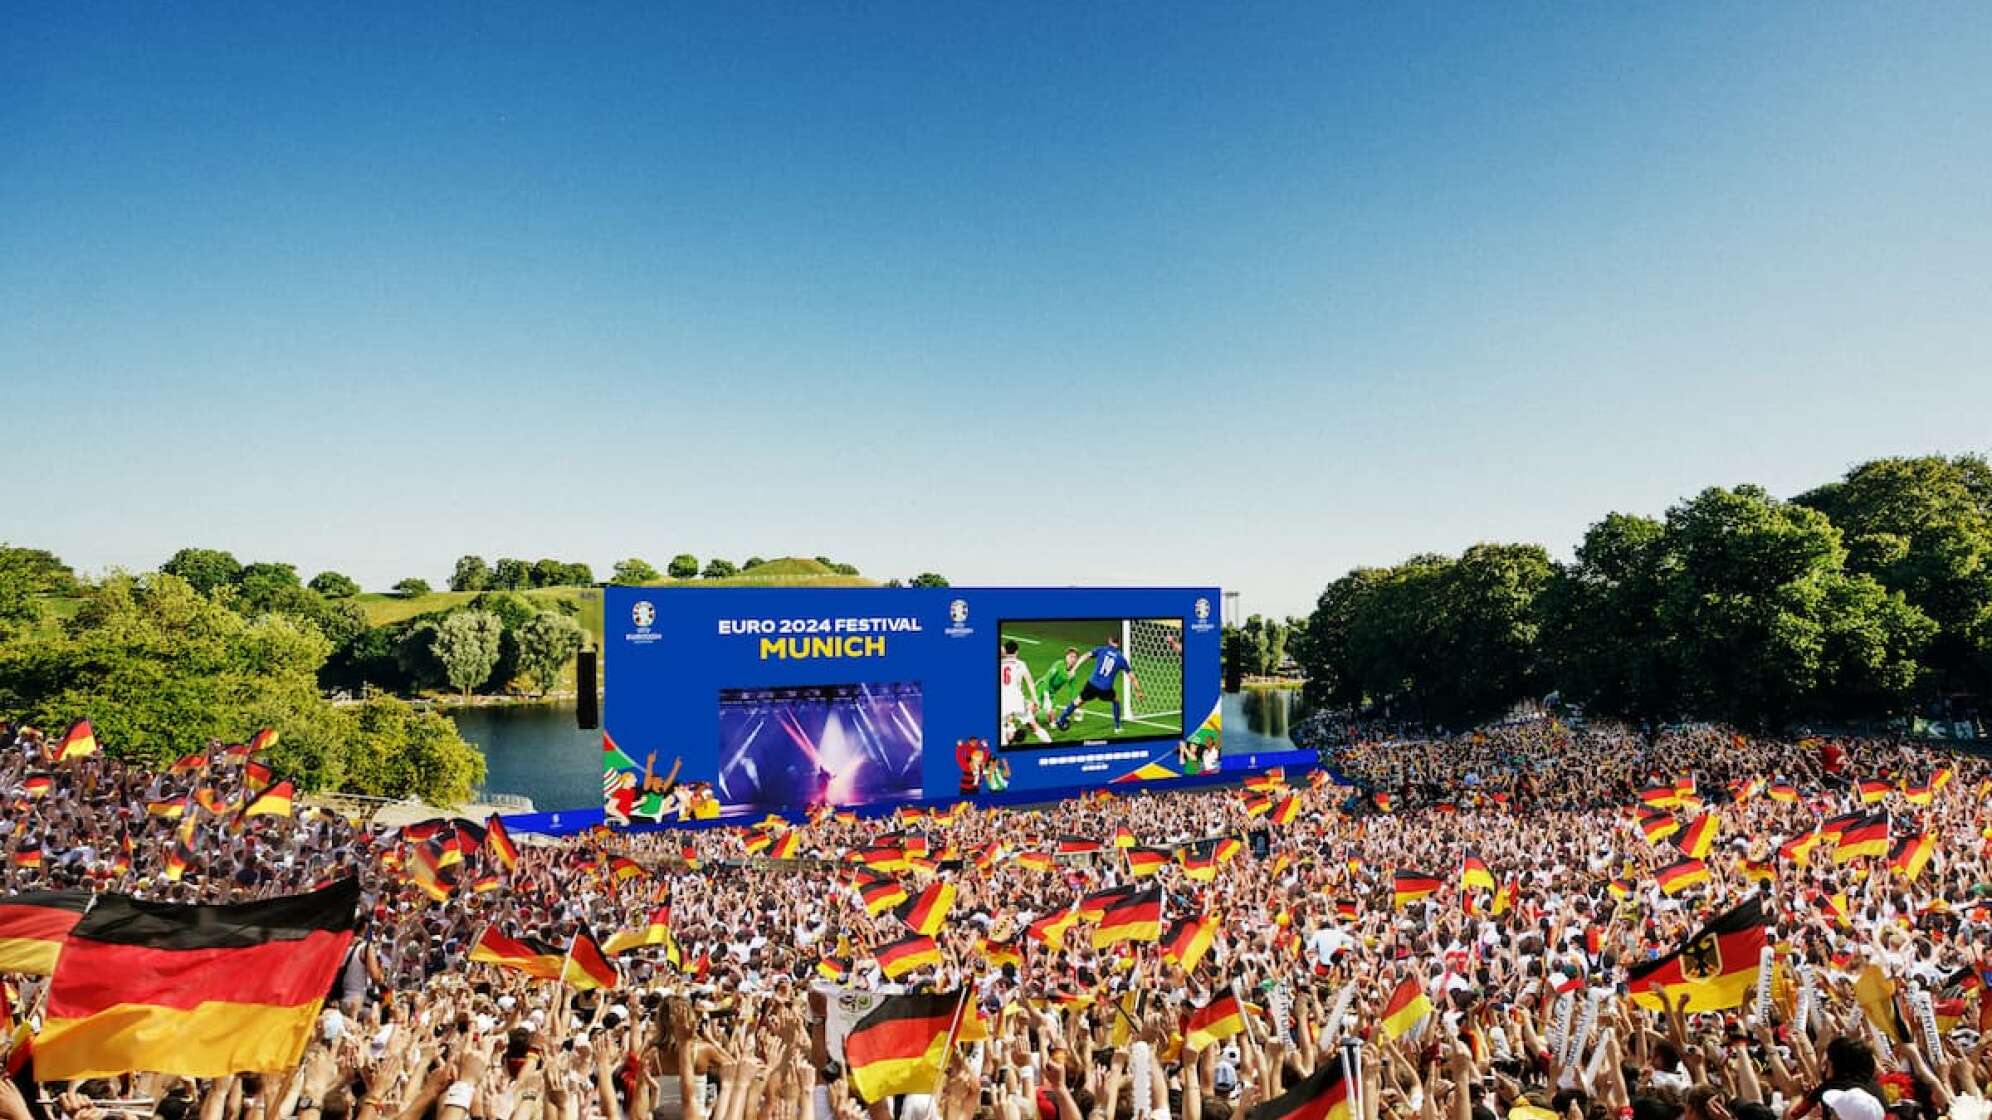 Visualisierung des Public Viewings in der Fan Zone zur UEFA EURO 2024 im Münchner Olympiapark.